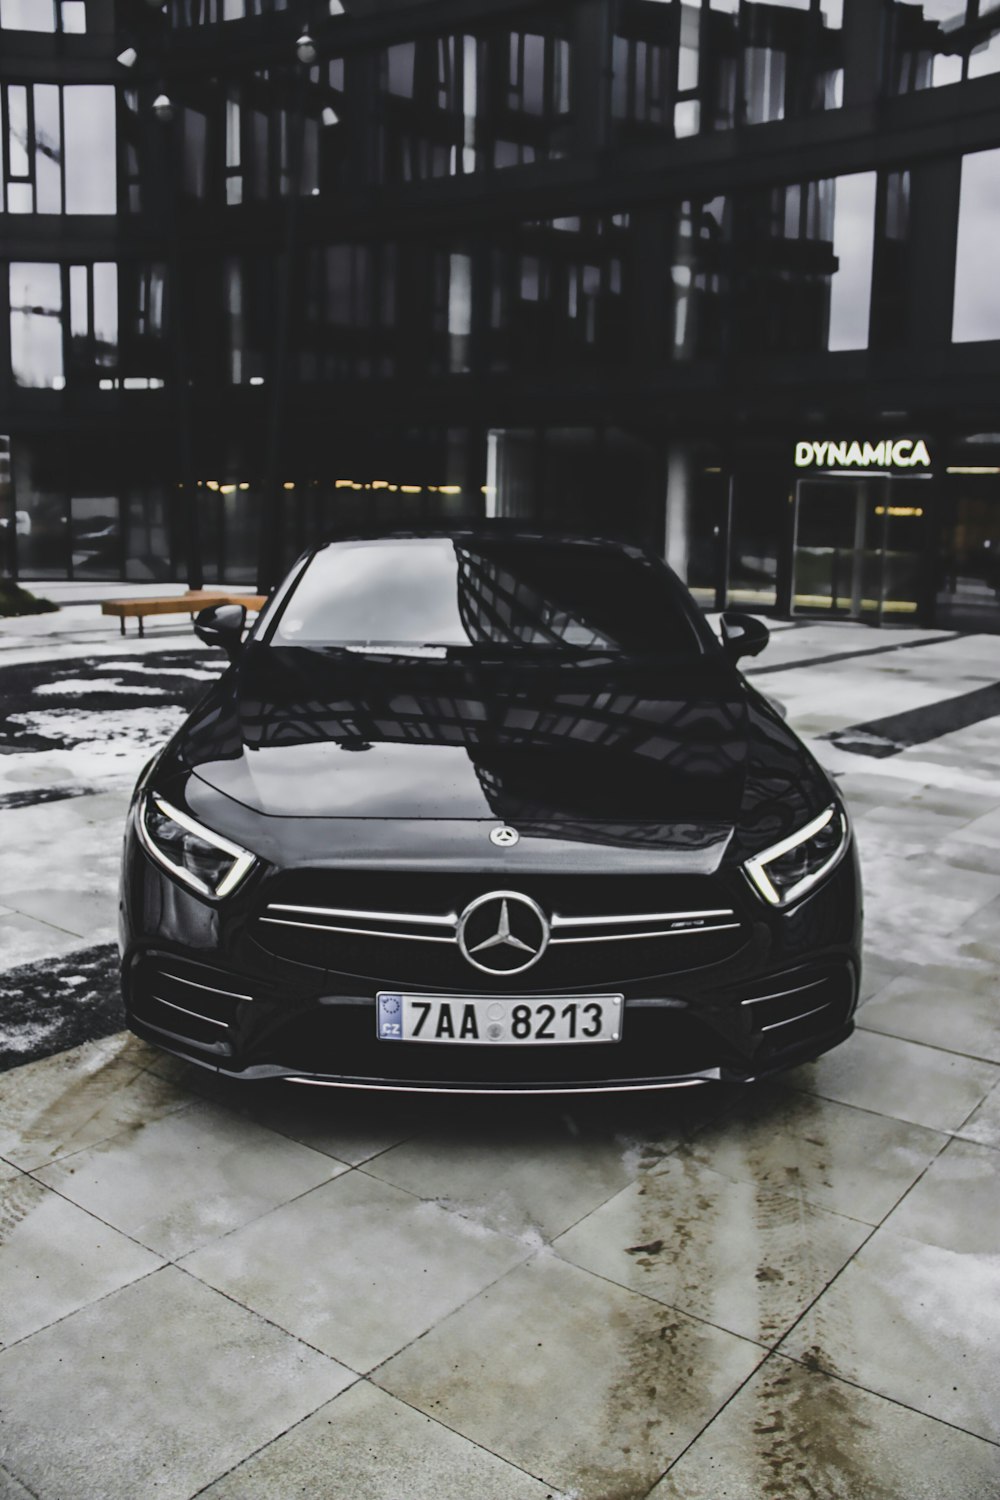 schwarzes Mercedes-Benz-Fahrzeug vor Dynamica-Gebäude geparkt